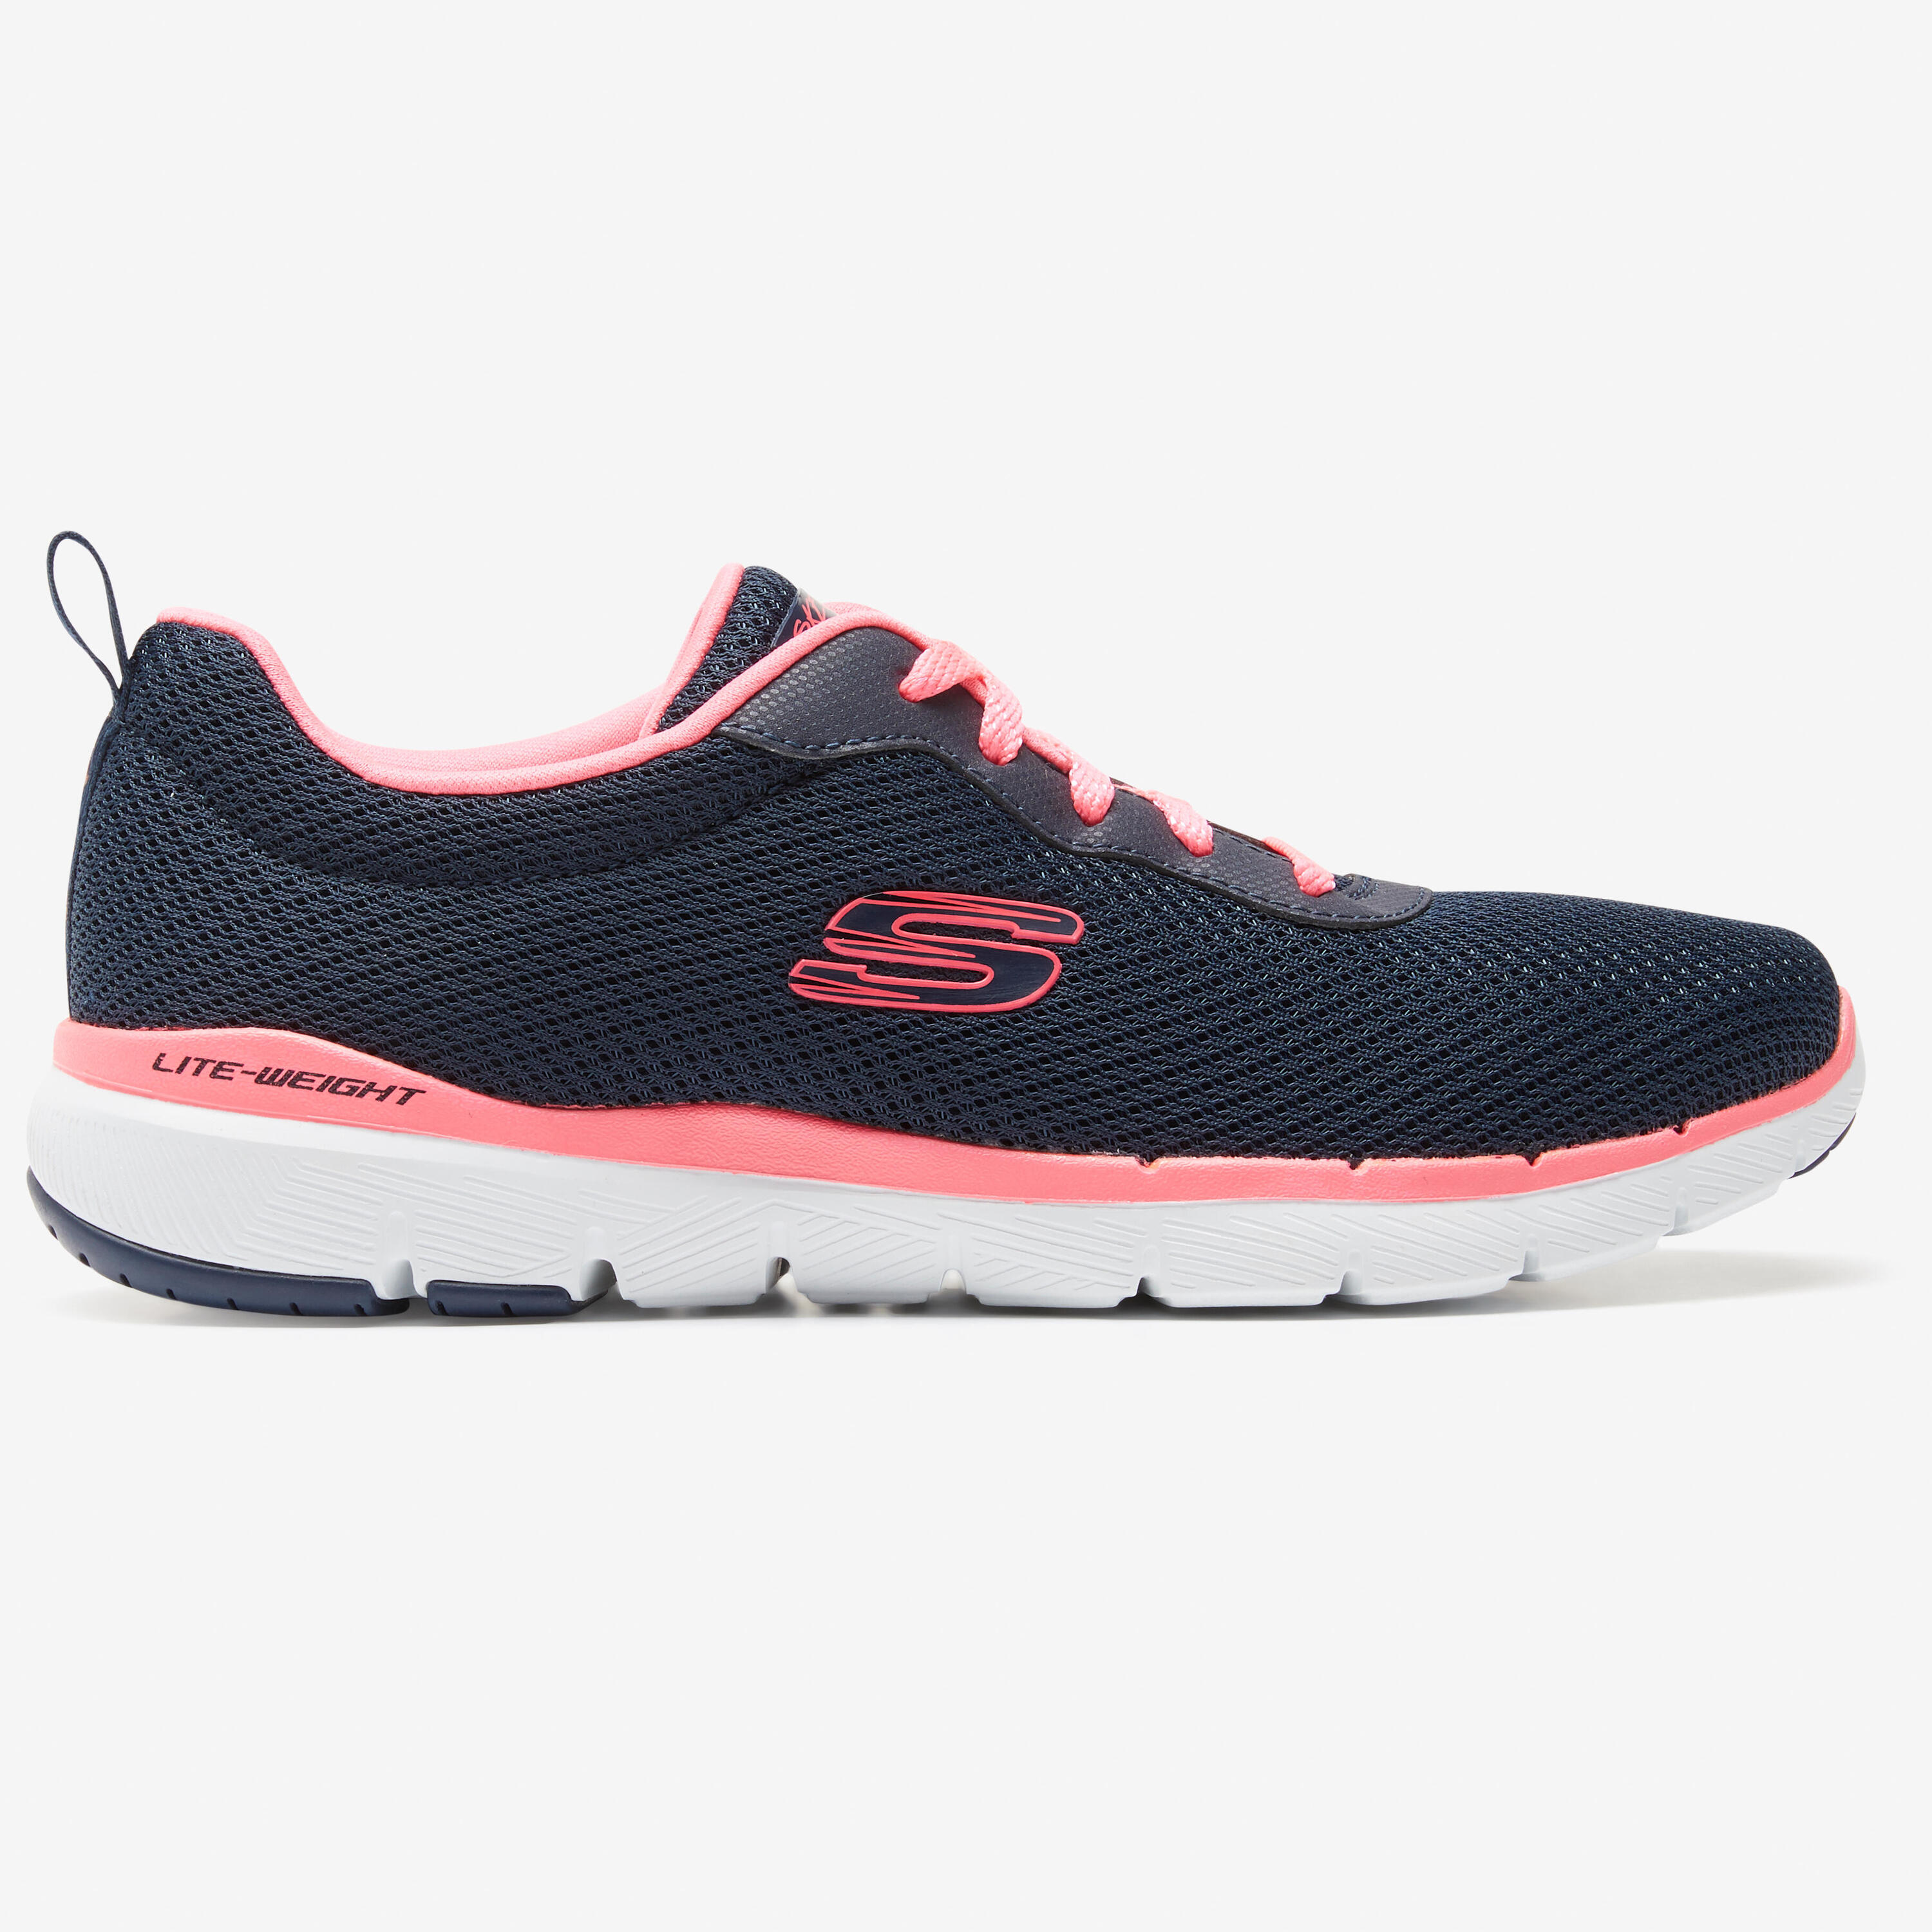 SKECHERS Flex Appeal Women's Fitness Walking Shoes - Blue/Pink